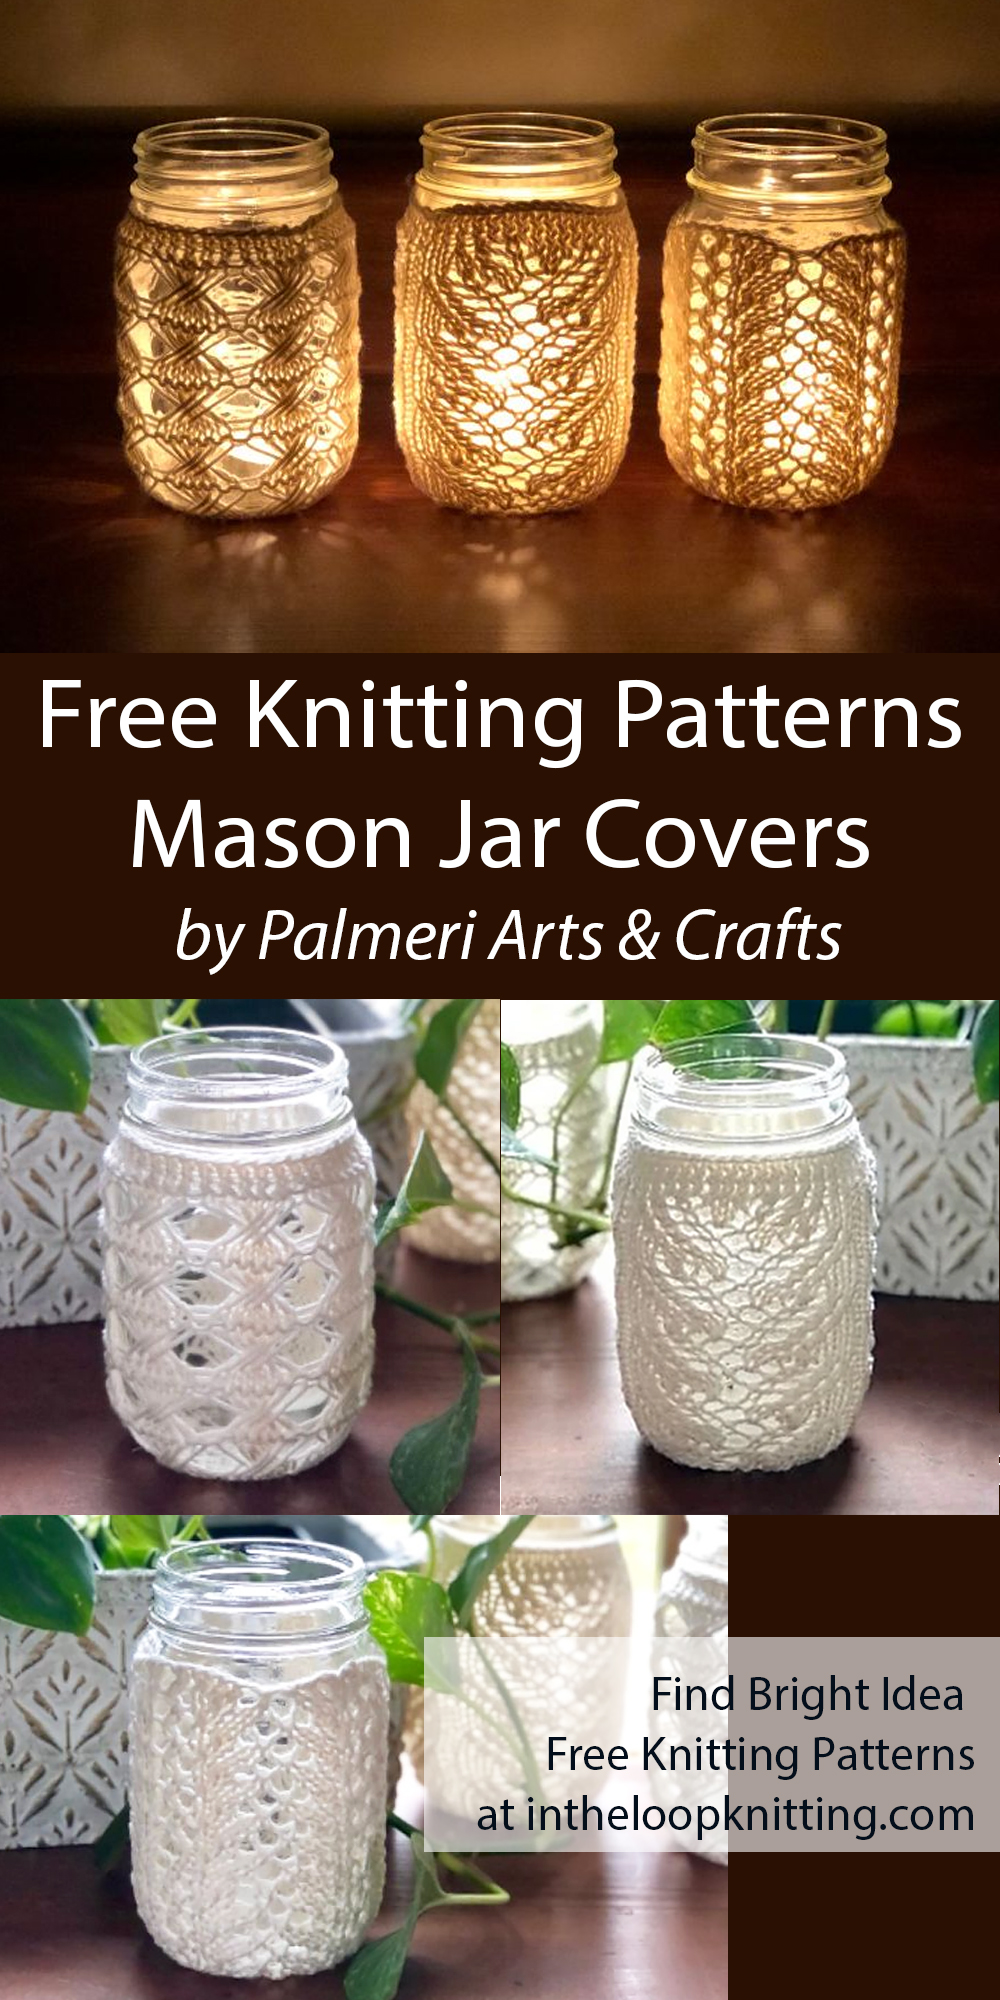 Free Christmas Knitting Pattern Mason Jar Covers